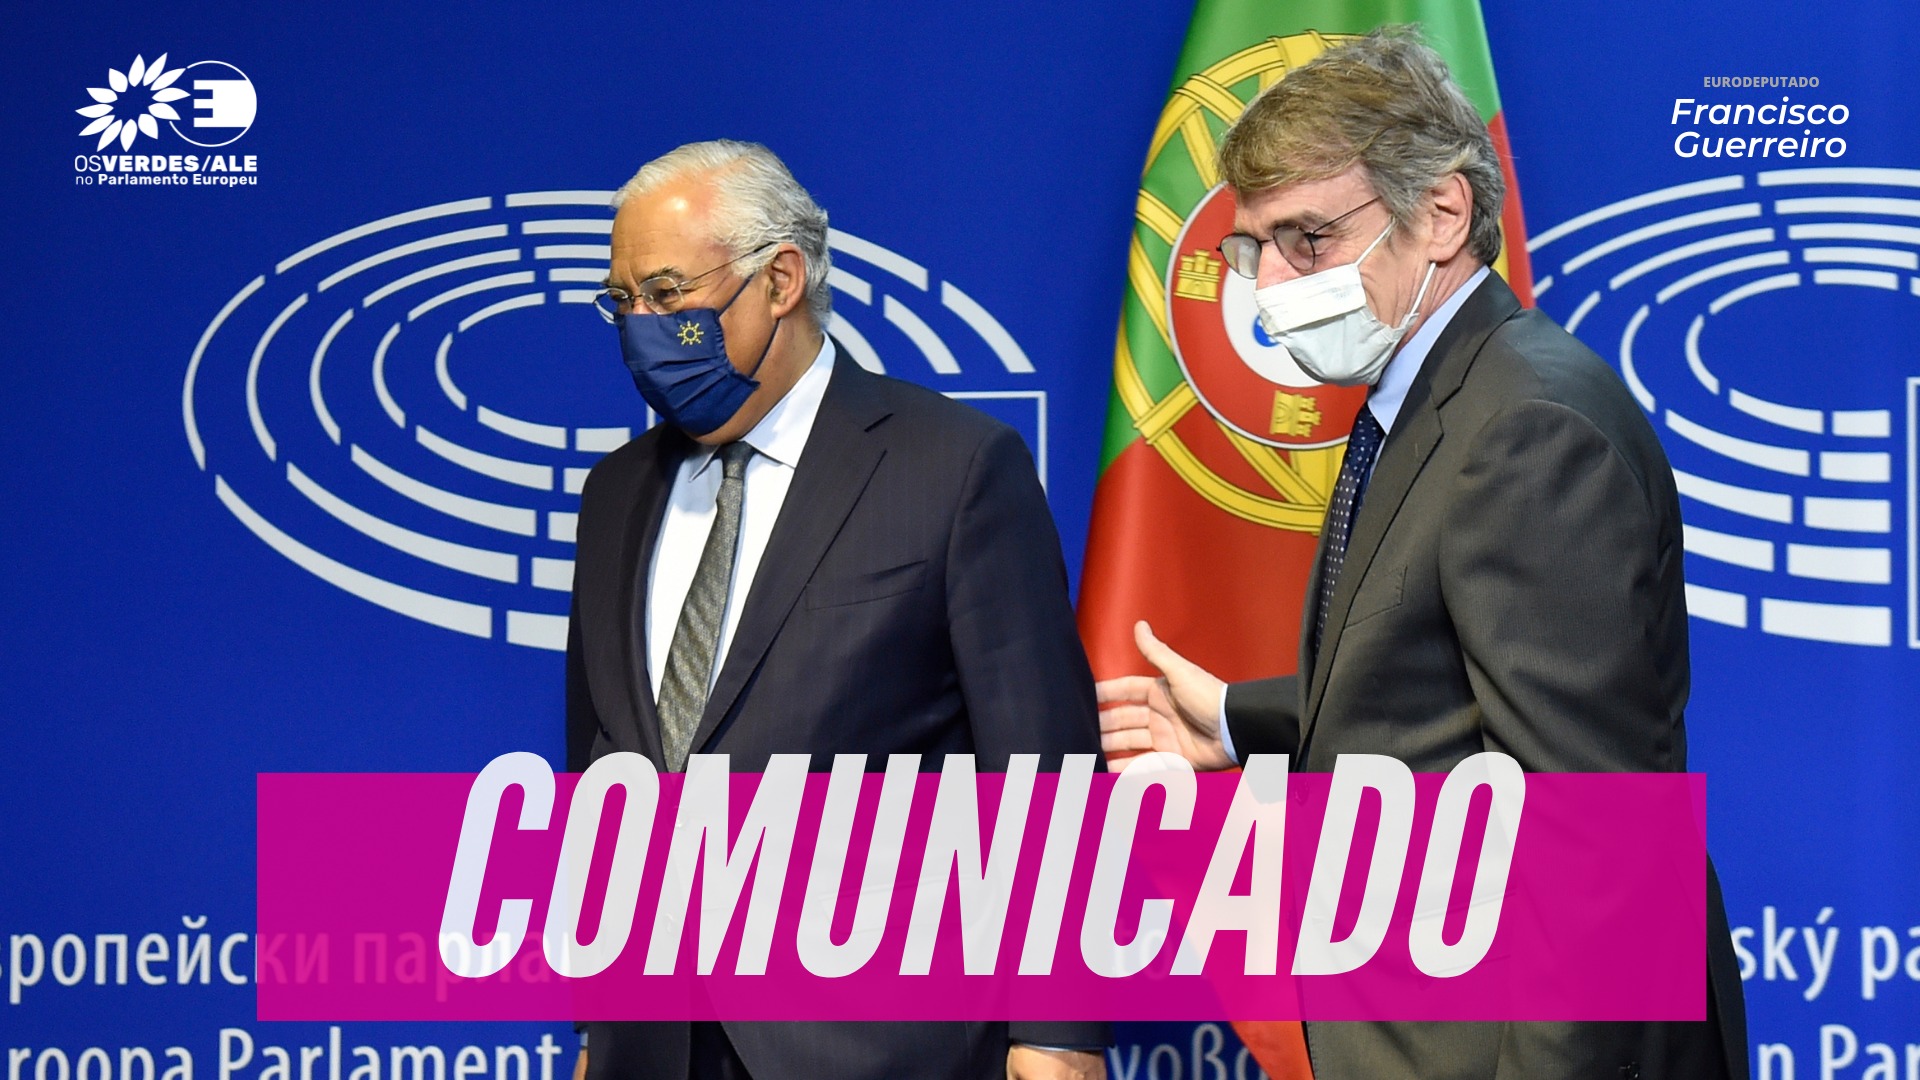 Fim da Presidência portuguesa: (In)Ação climática e acordo na Política Agrícola Comum ditam avaliação negativa 